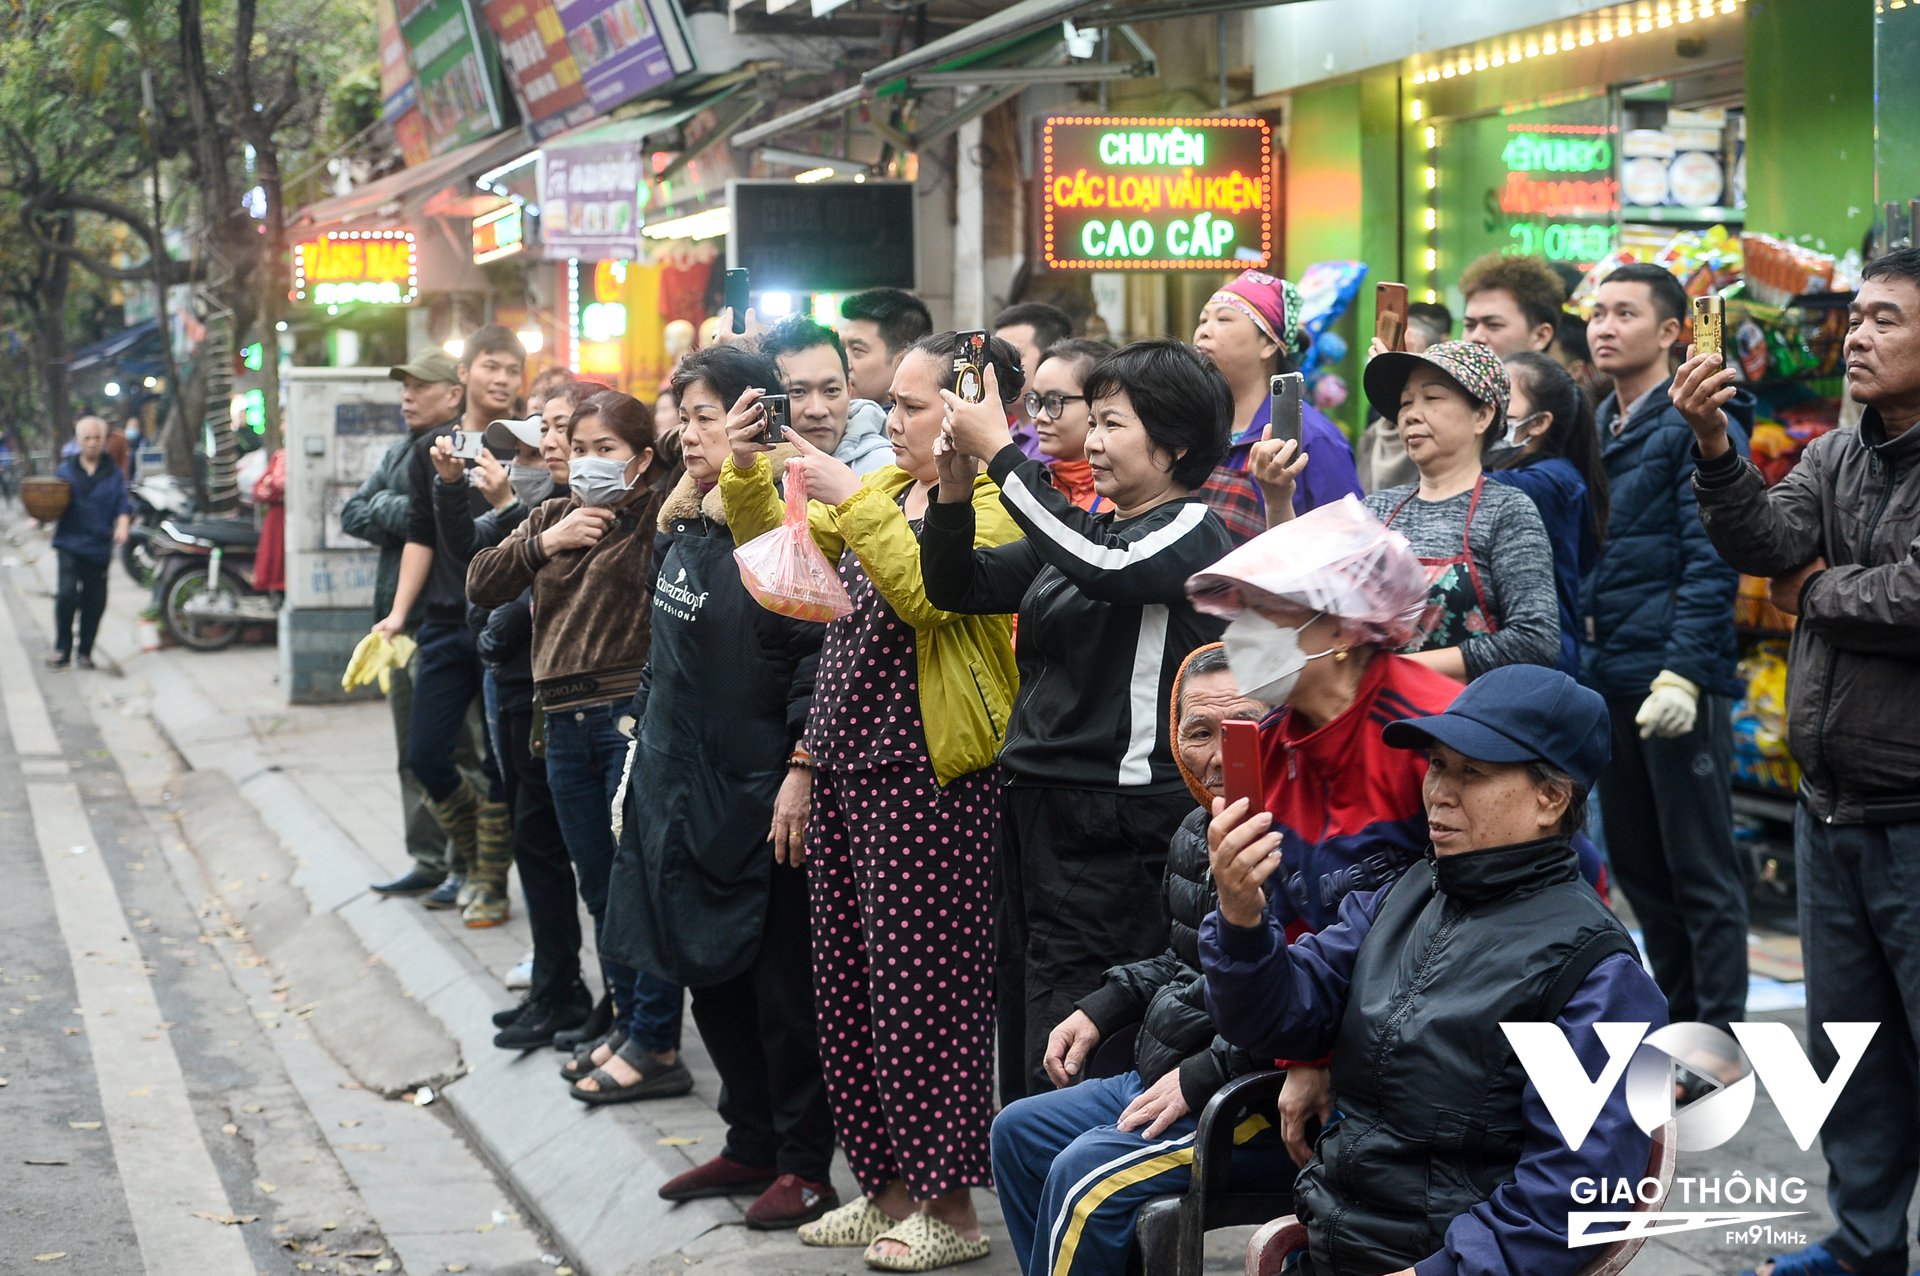 Buổi diễn tập đã thu hút sự chú ý của nhiều người dân và các tiểu thương chợ Châu Long.